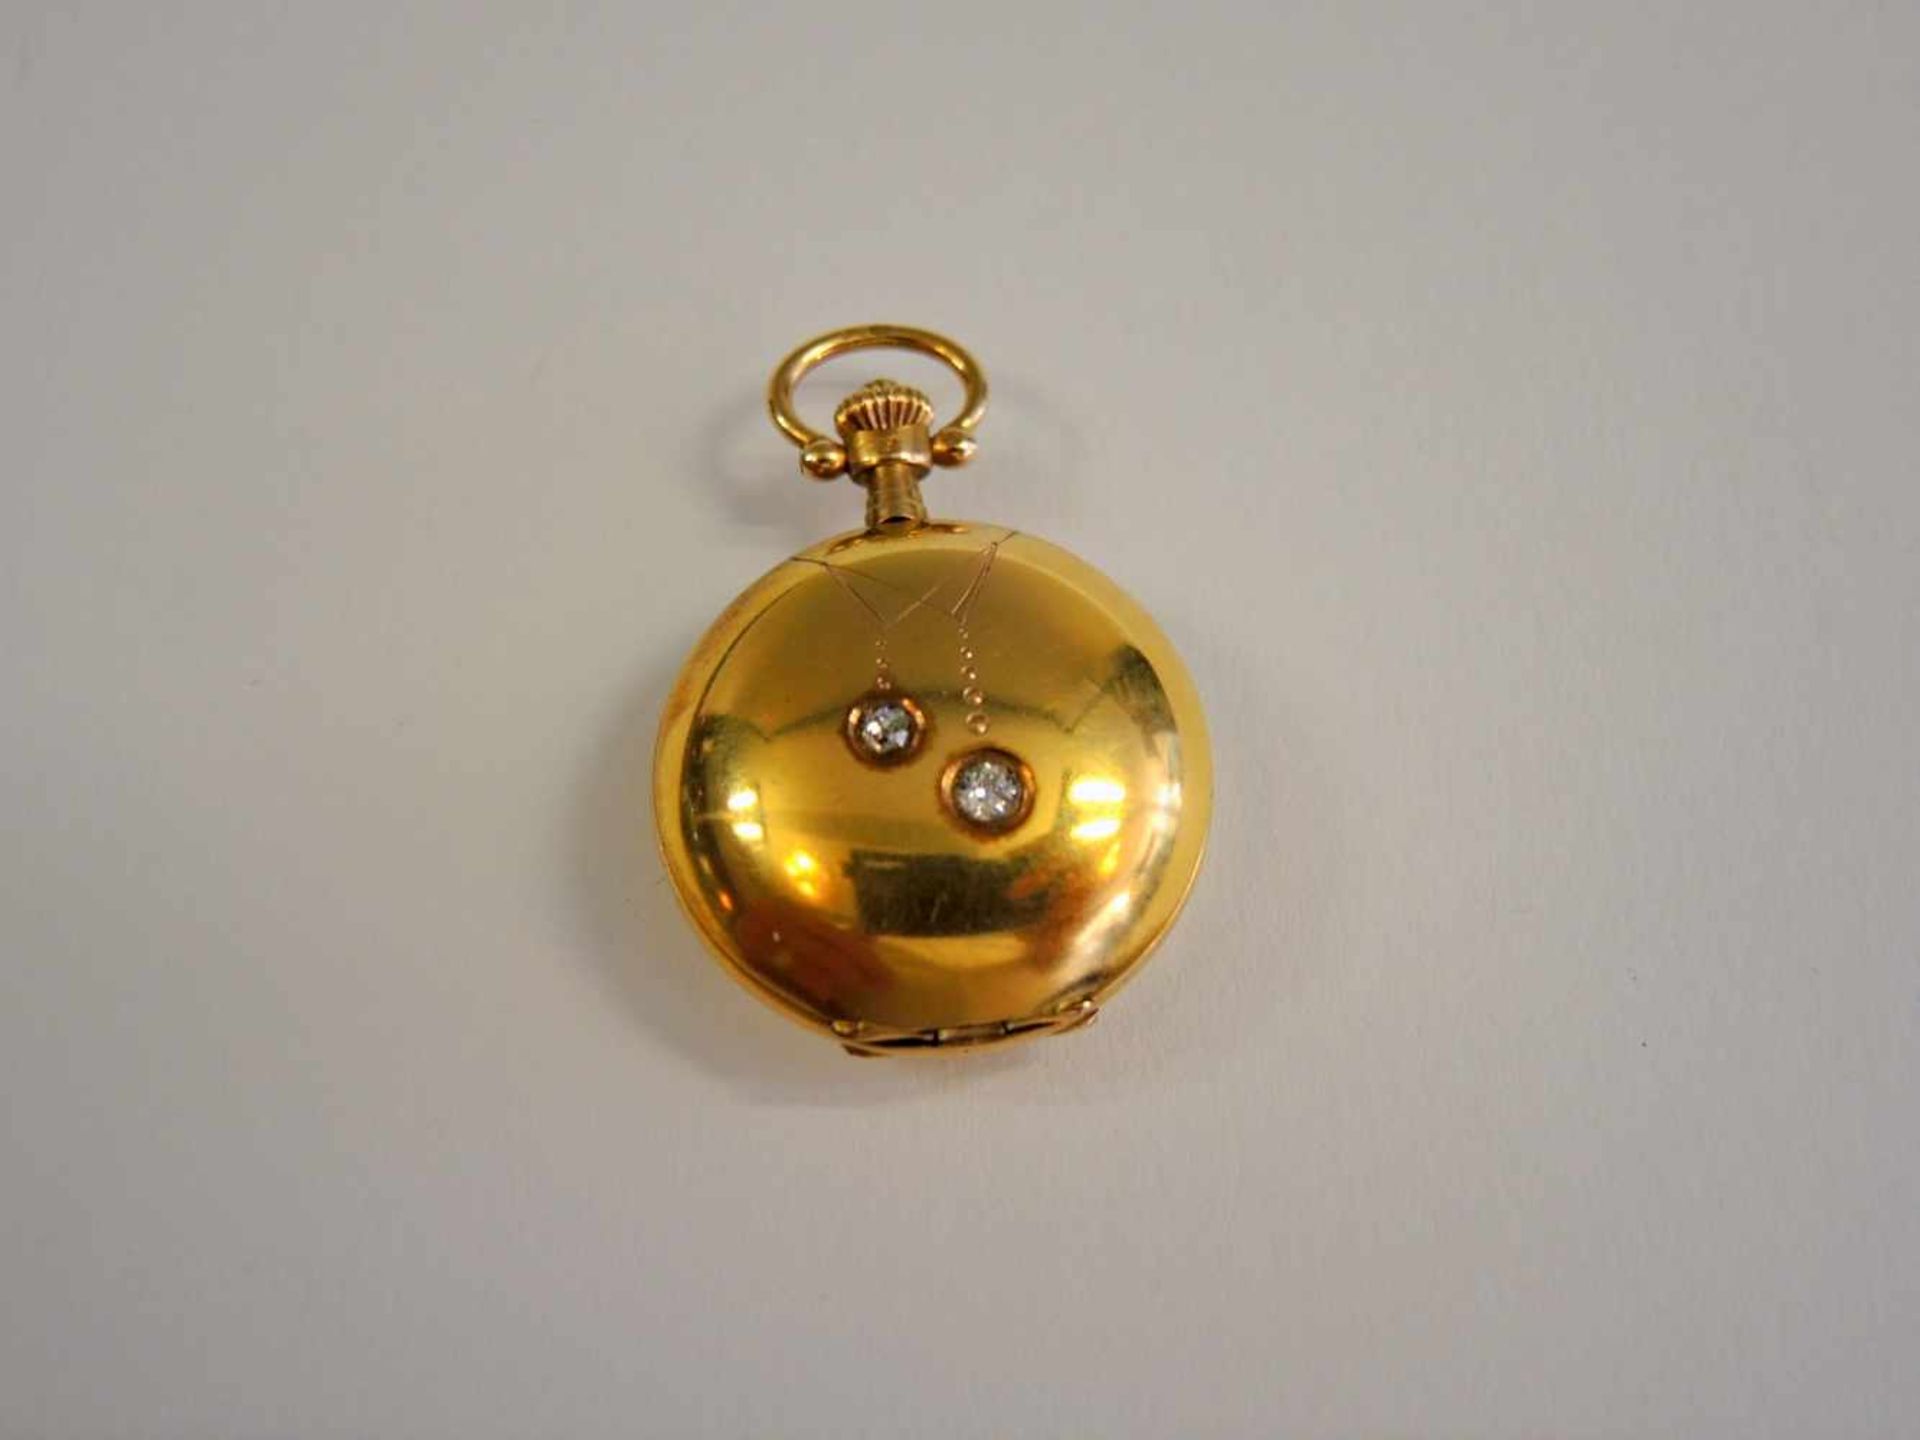 Feine Damen-Umhängeuhr14 K. Gelbgold, mit Diamanten, gangbar. Ø ca. 25 mm, Gewicht 16 g - Bild 2 aus 2